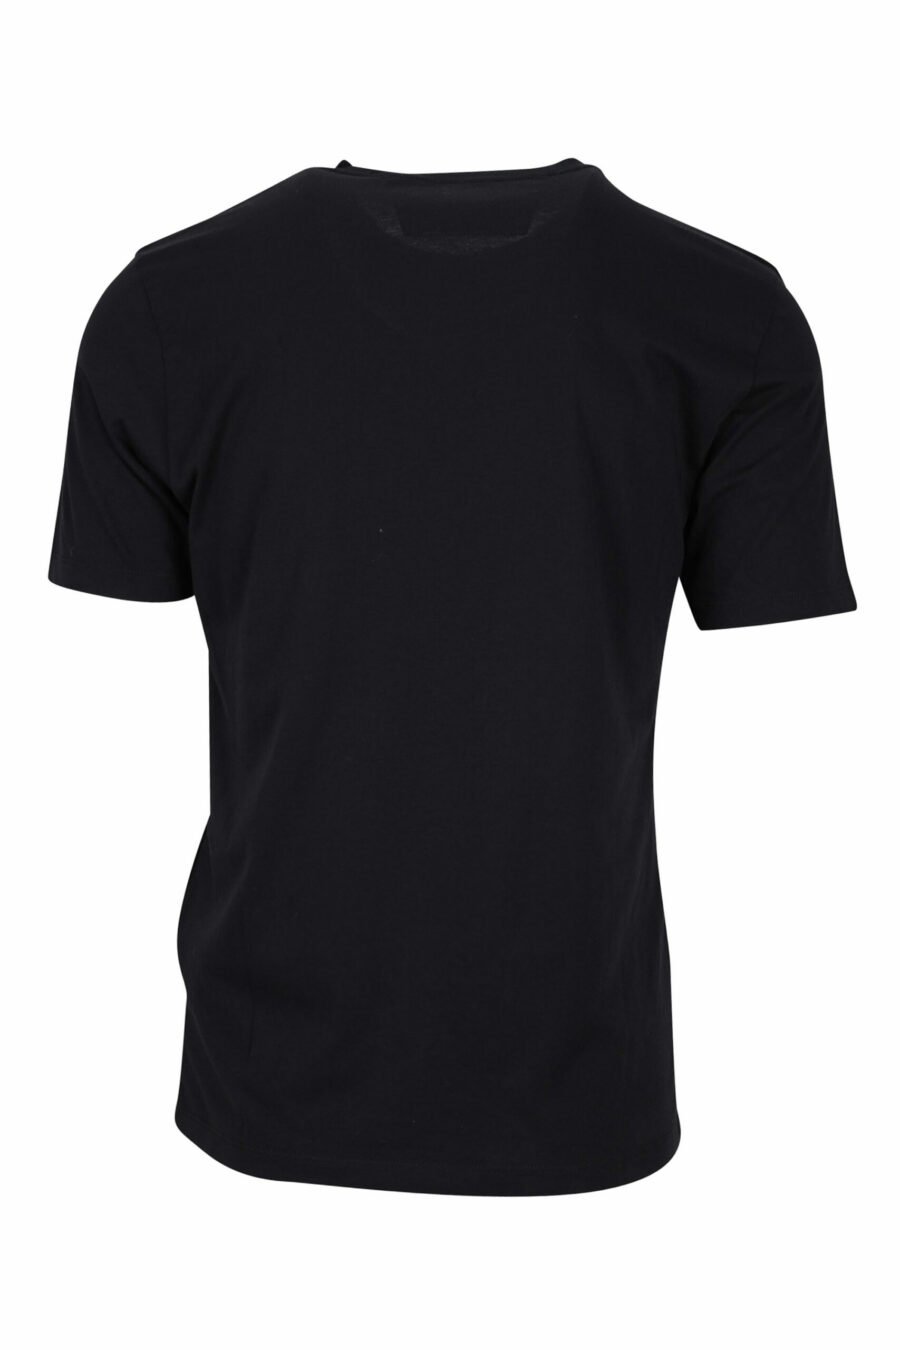 T-shirt noir avec maxilogo graphique - 7620943572964 1 à l'échelle